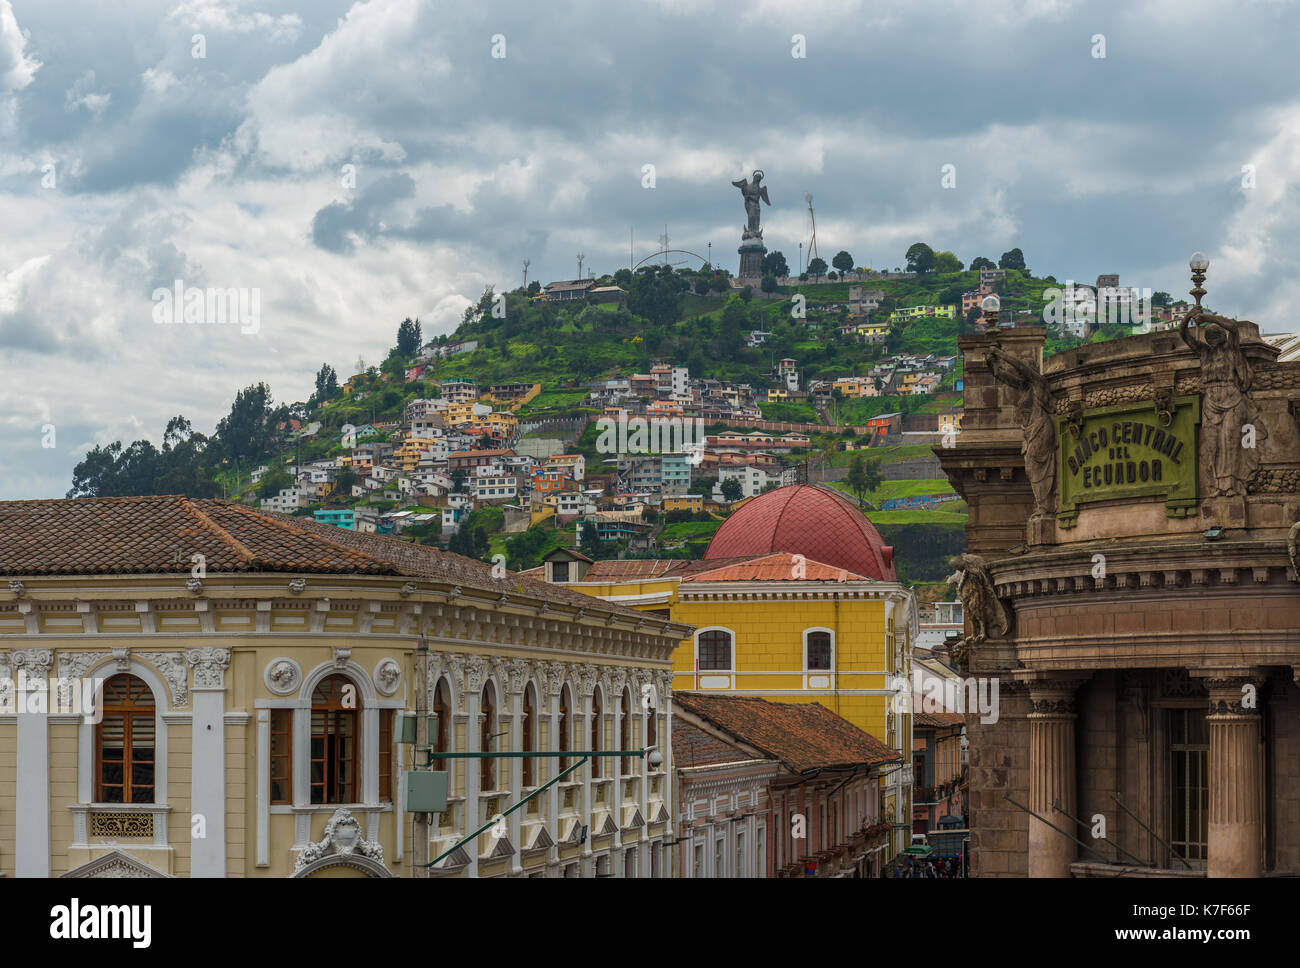 Paisaje urbano del centro histórico de la ciudad de Quito con arquitectura colonial y el cerro el Panecillo con virgen apocalíptica en el fondo, Ecuador. Foto de stock